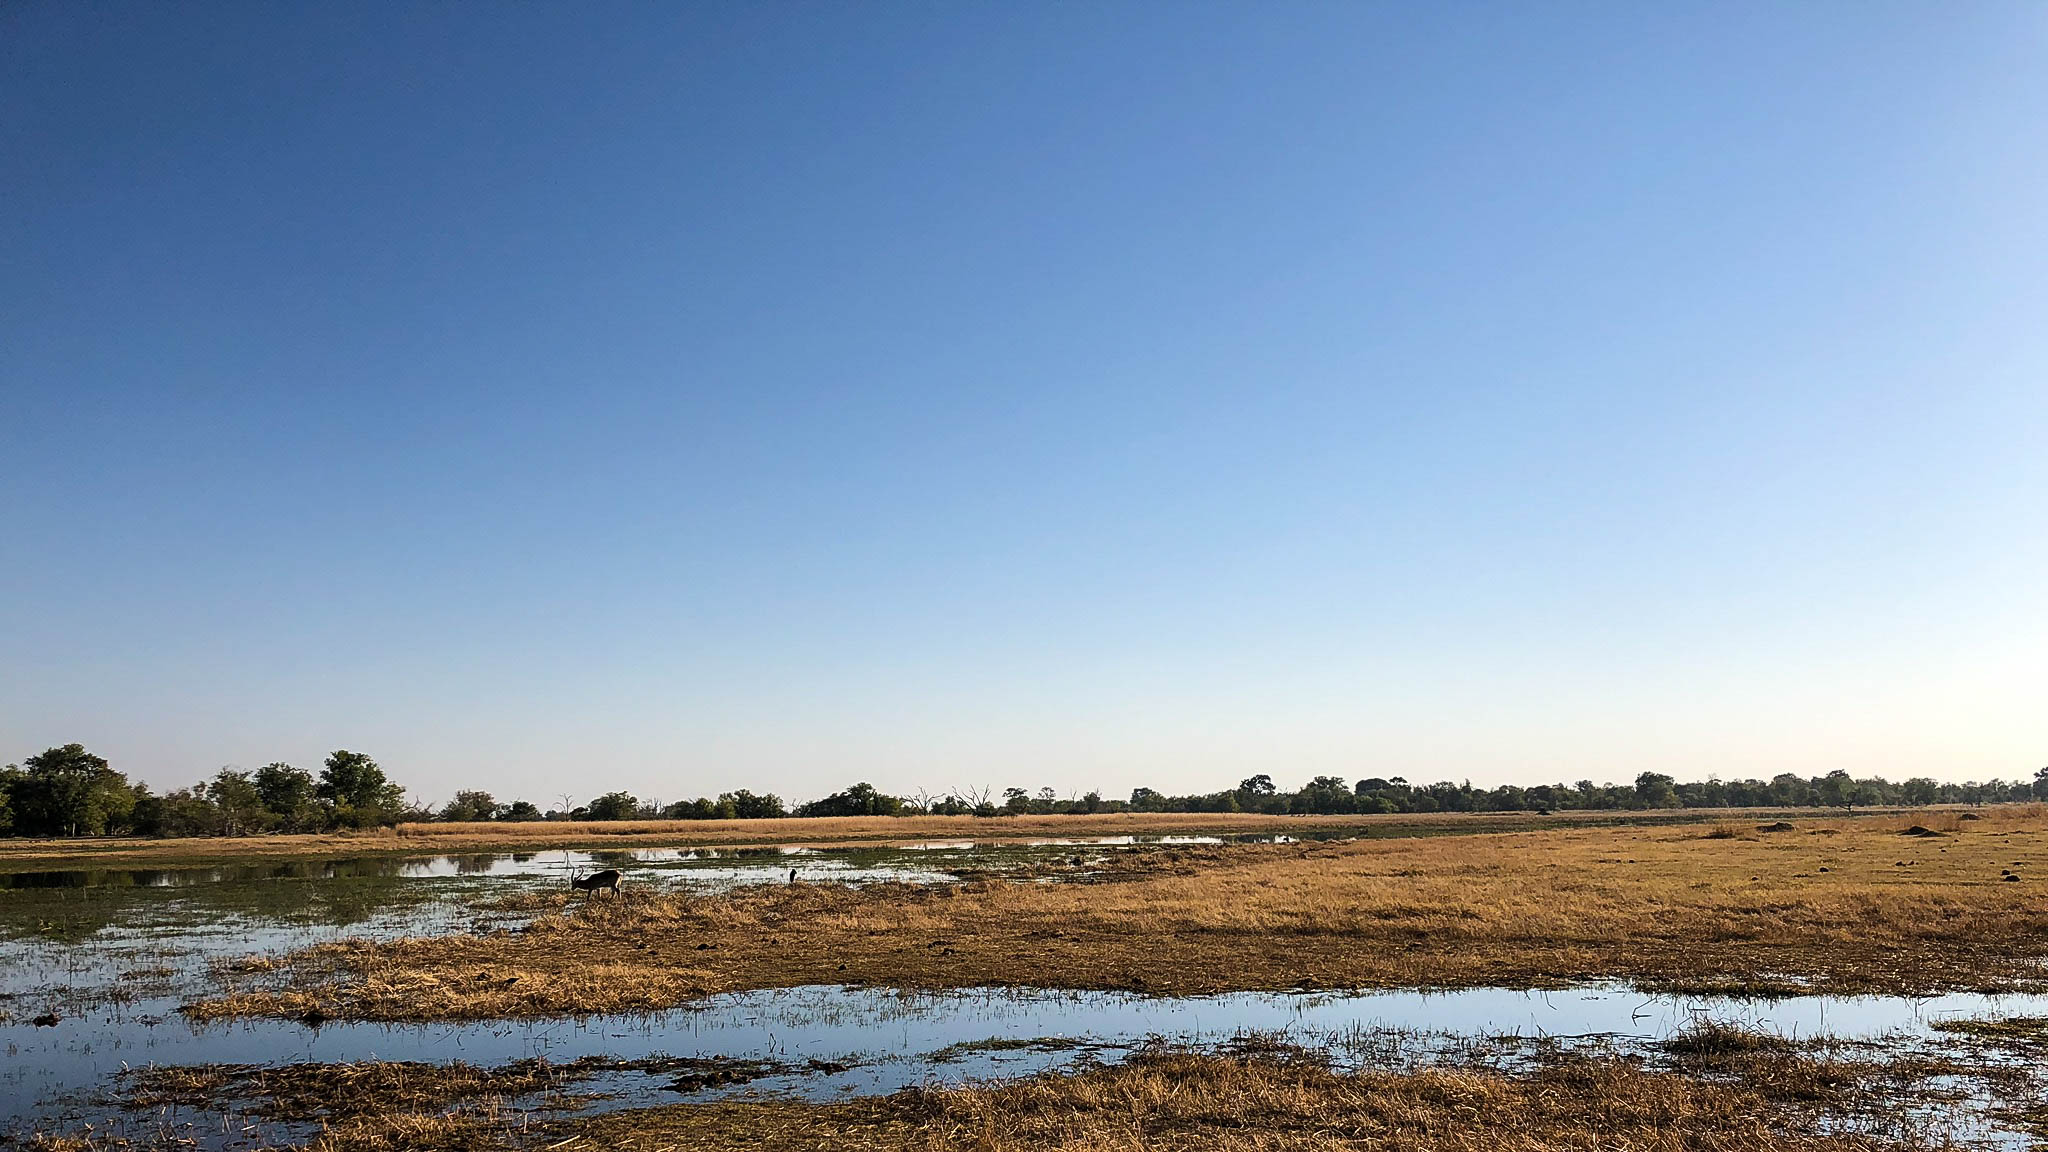 Lechwe in the Okavango delta